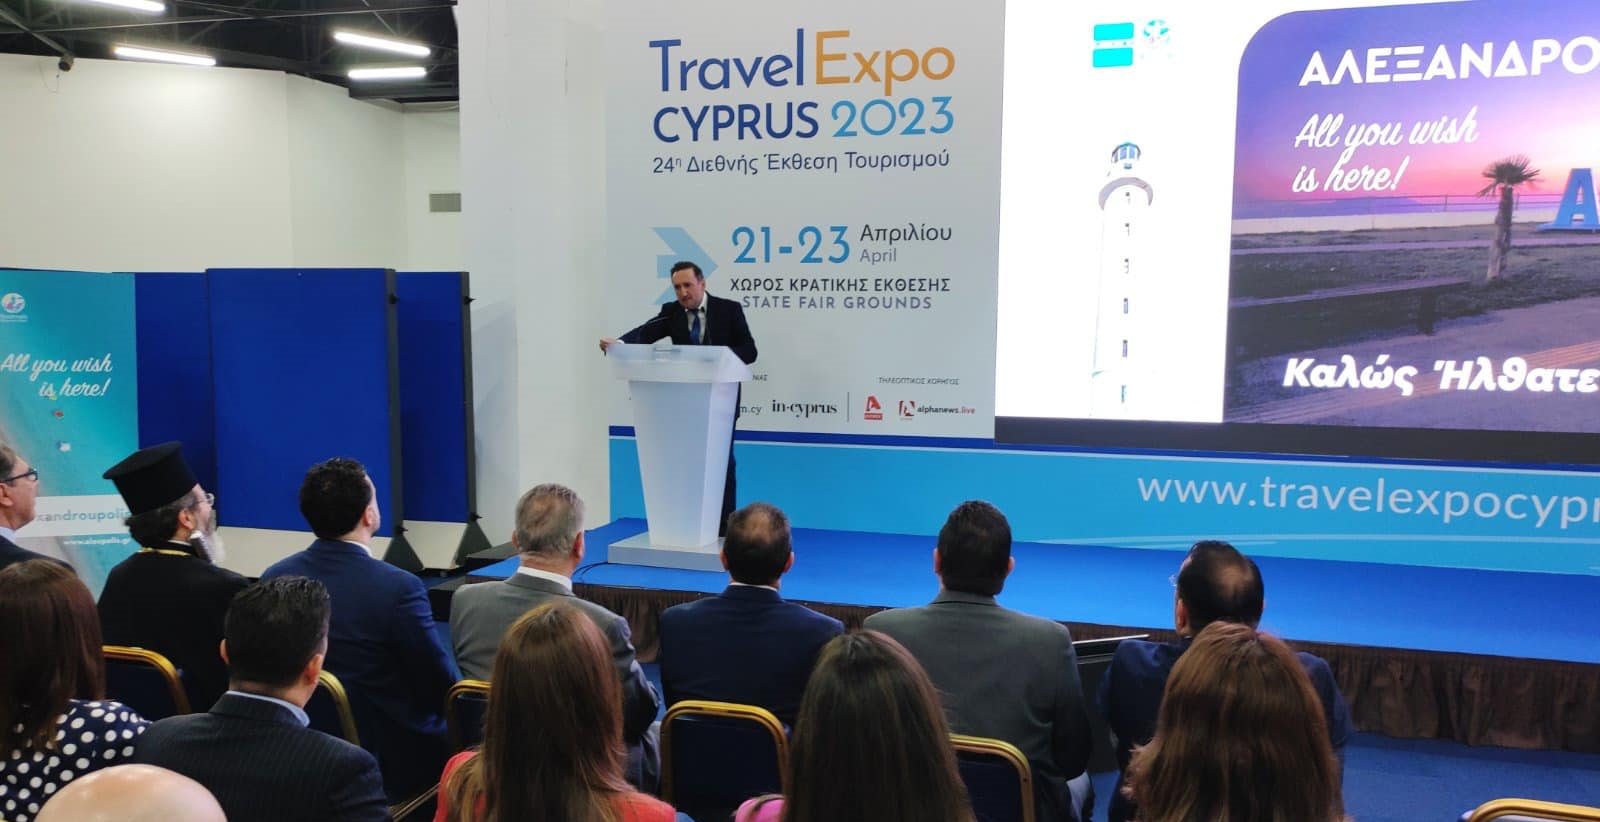 Πέραν των 12 χιλιάδων επισκέφθηκαν την έκθεση TRAVEL EXPO CYPRUS 2023